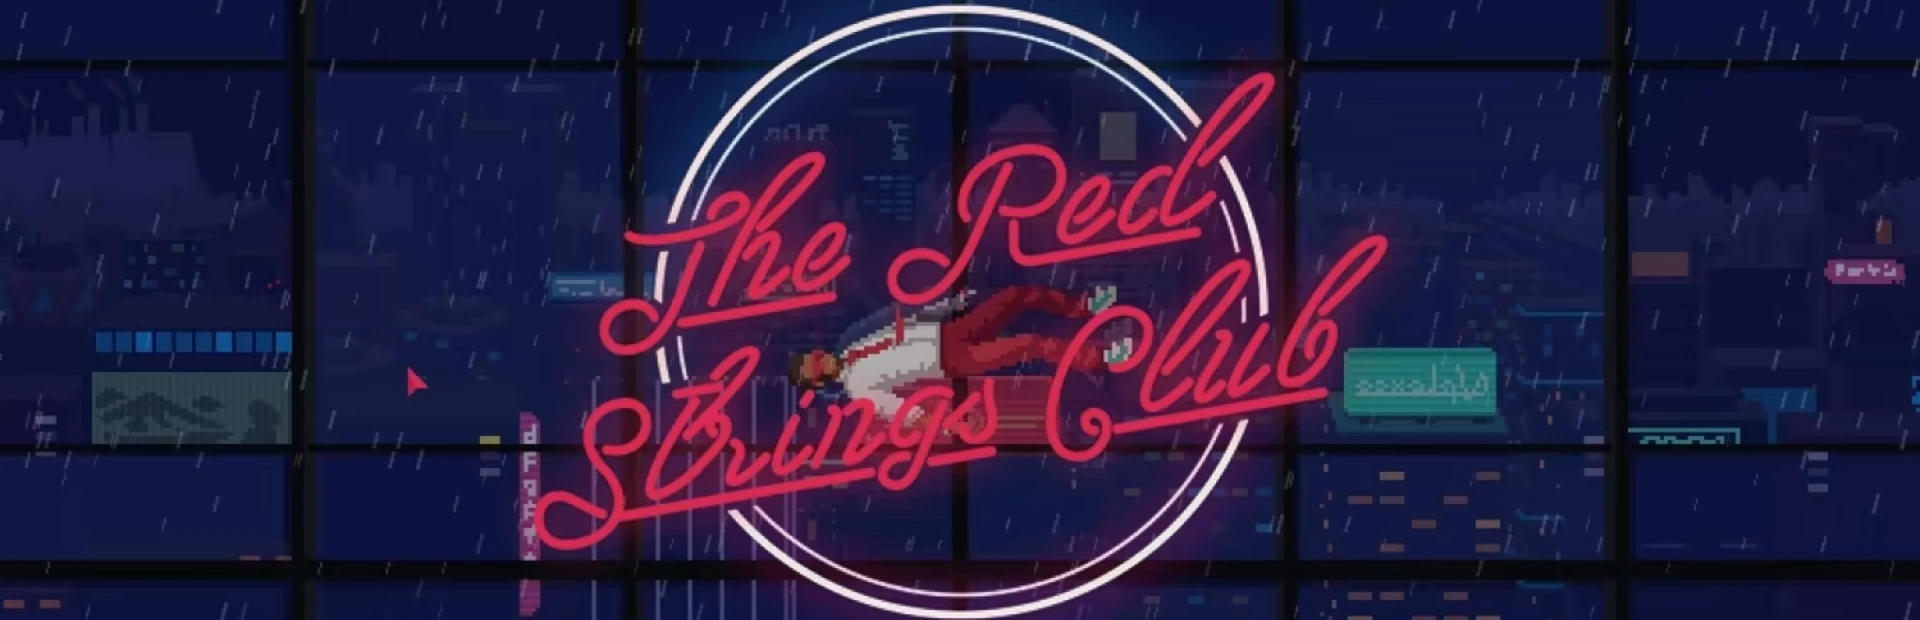 دانلود بازی The red strings club برای کامپیوتر | گیمباتو